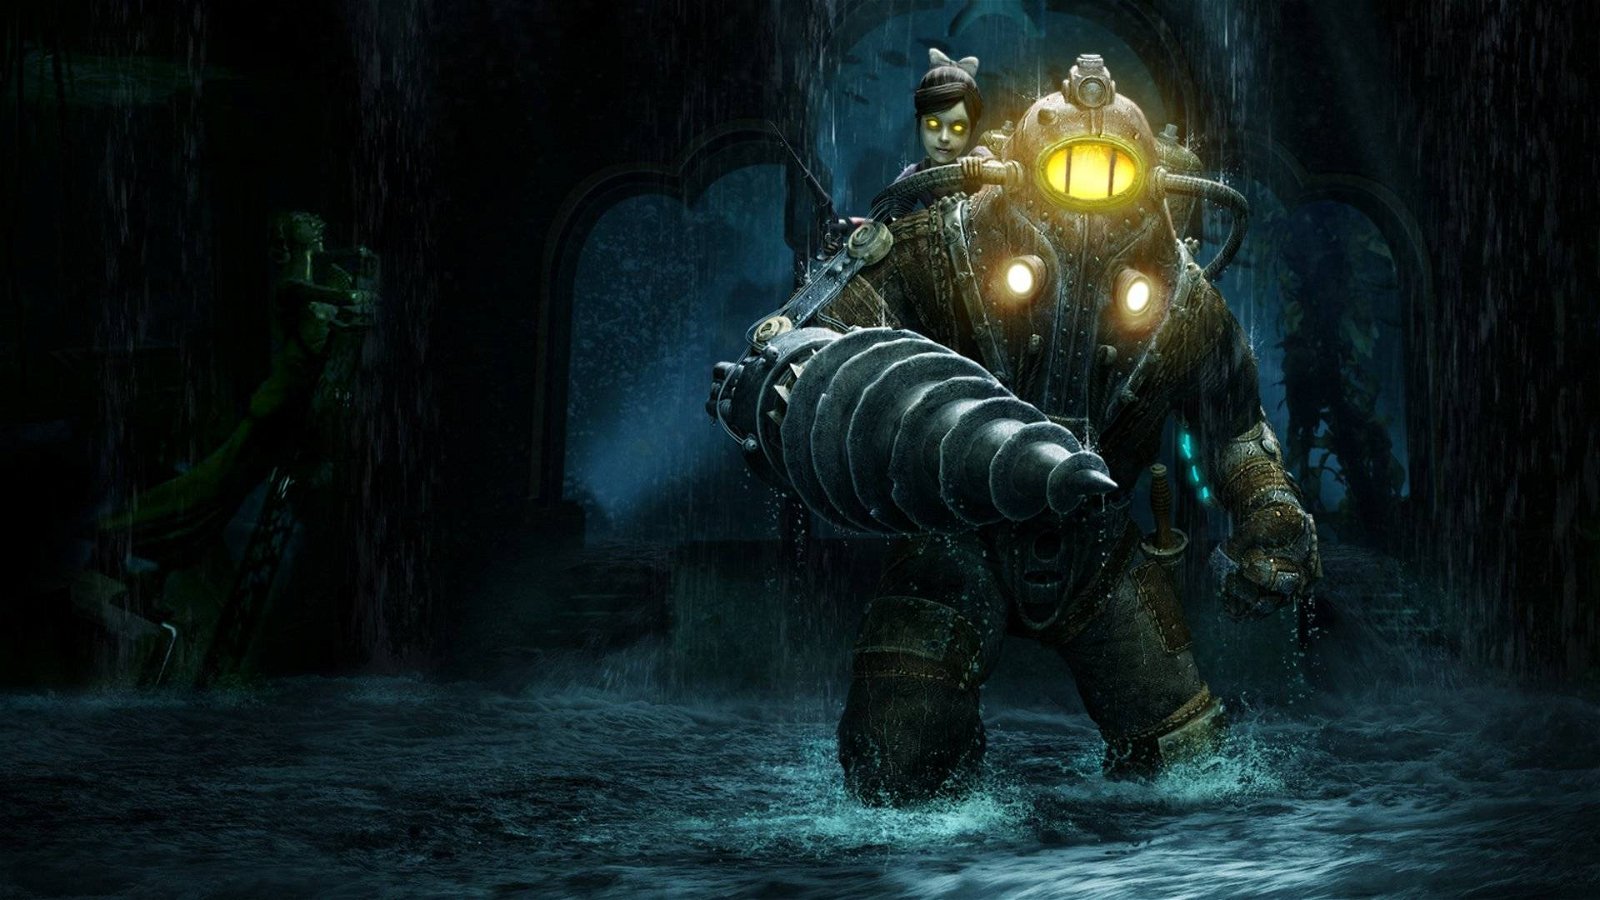 Immagine di BioShock The Collection: offerta su Amazon, prezzo più basso di sempre